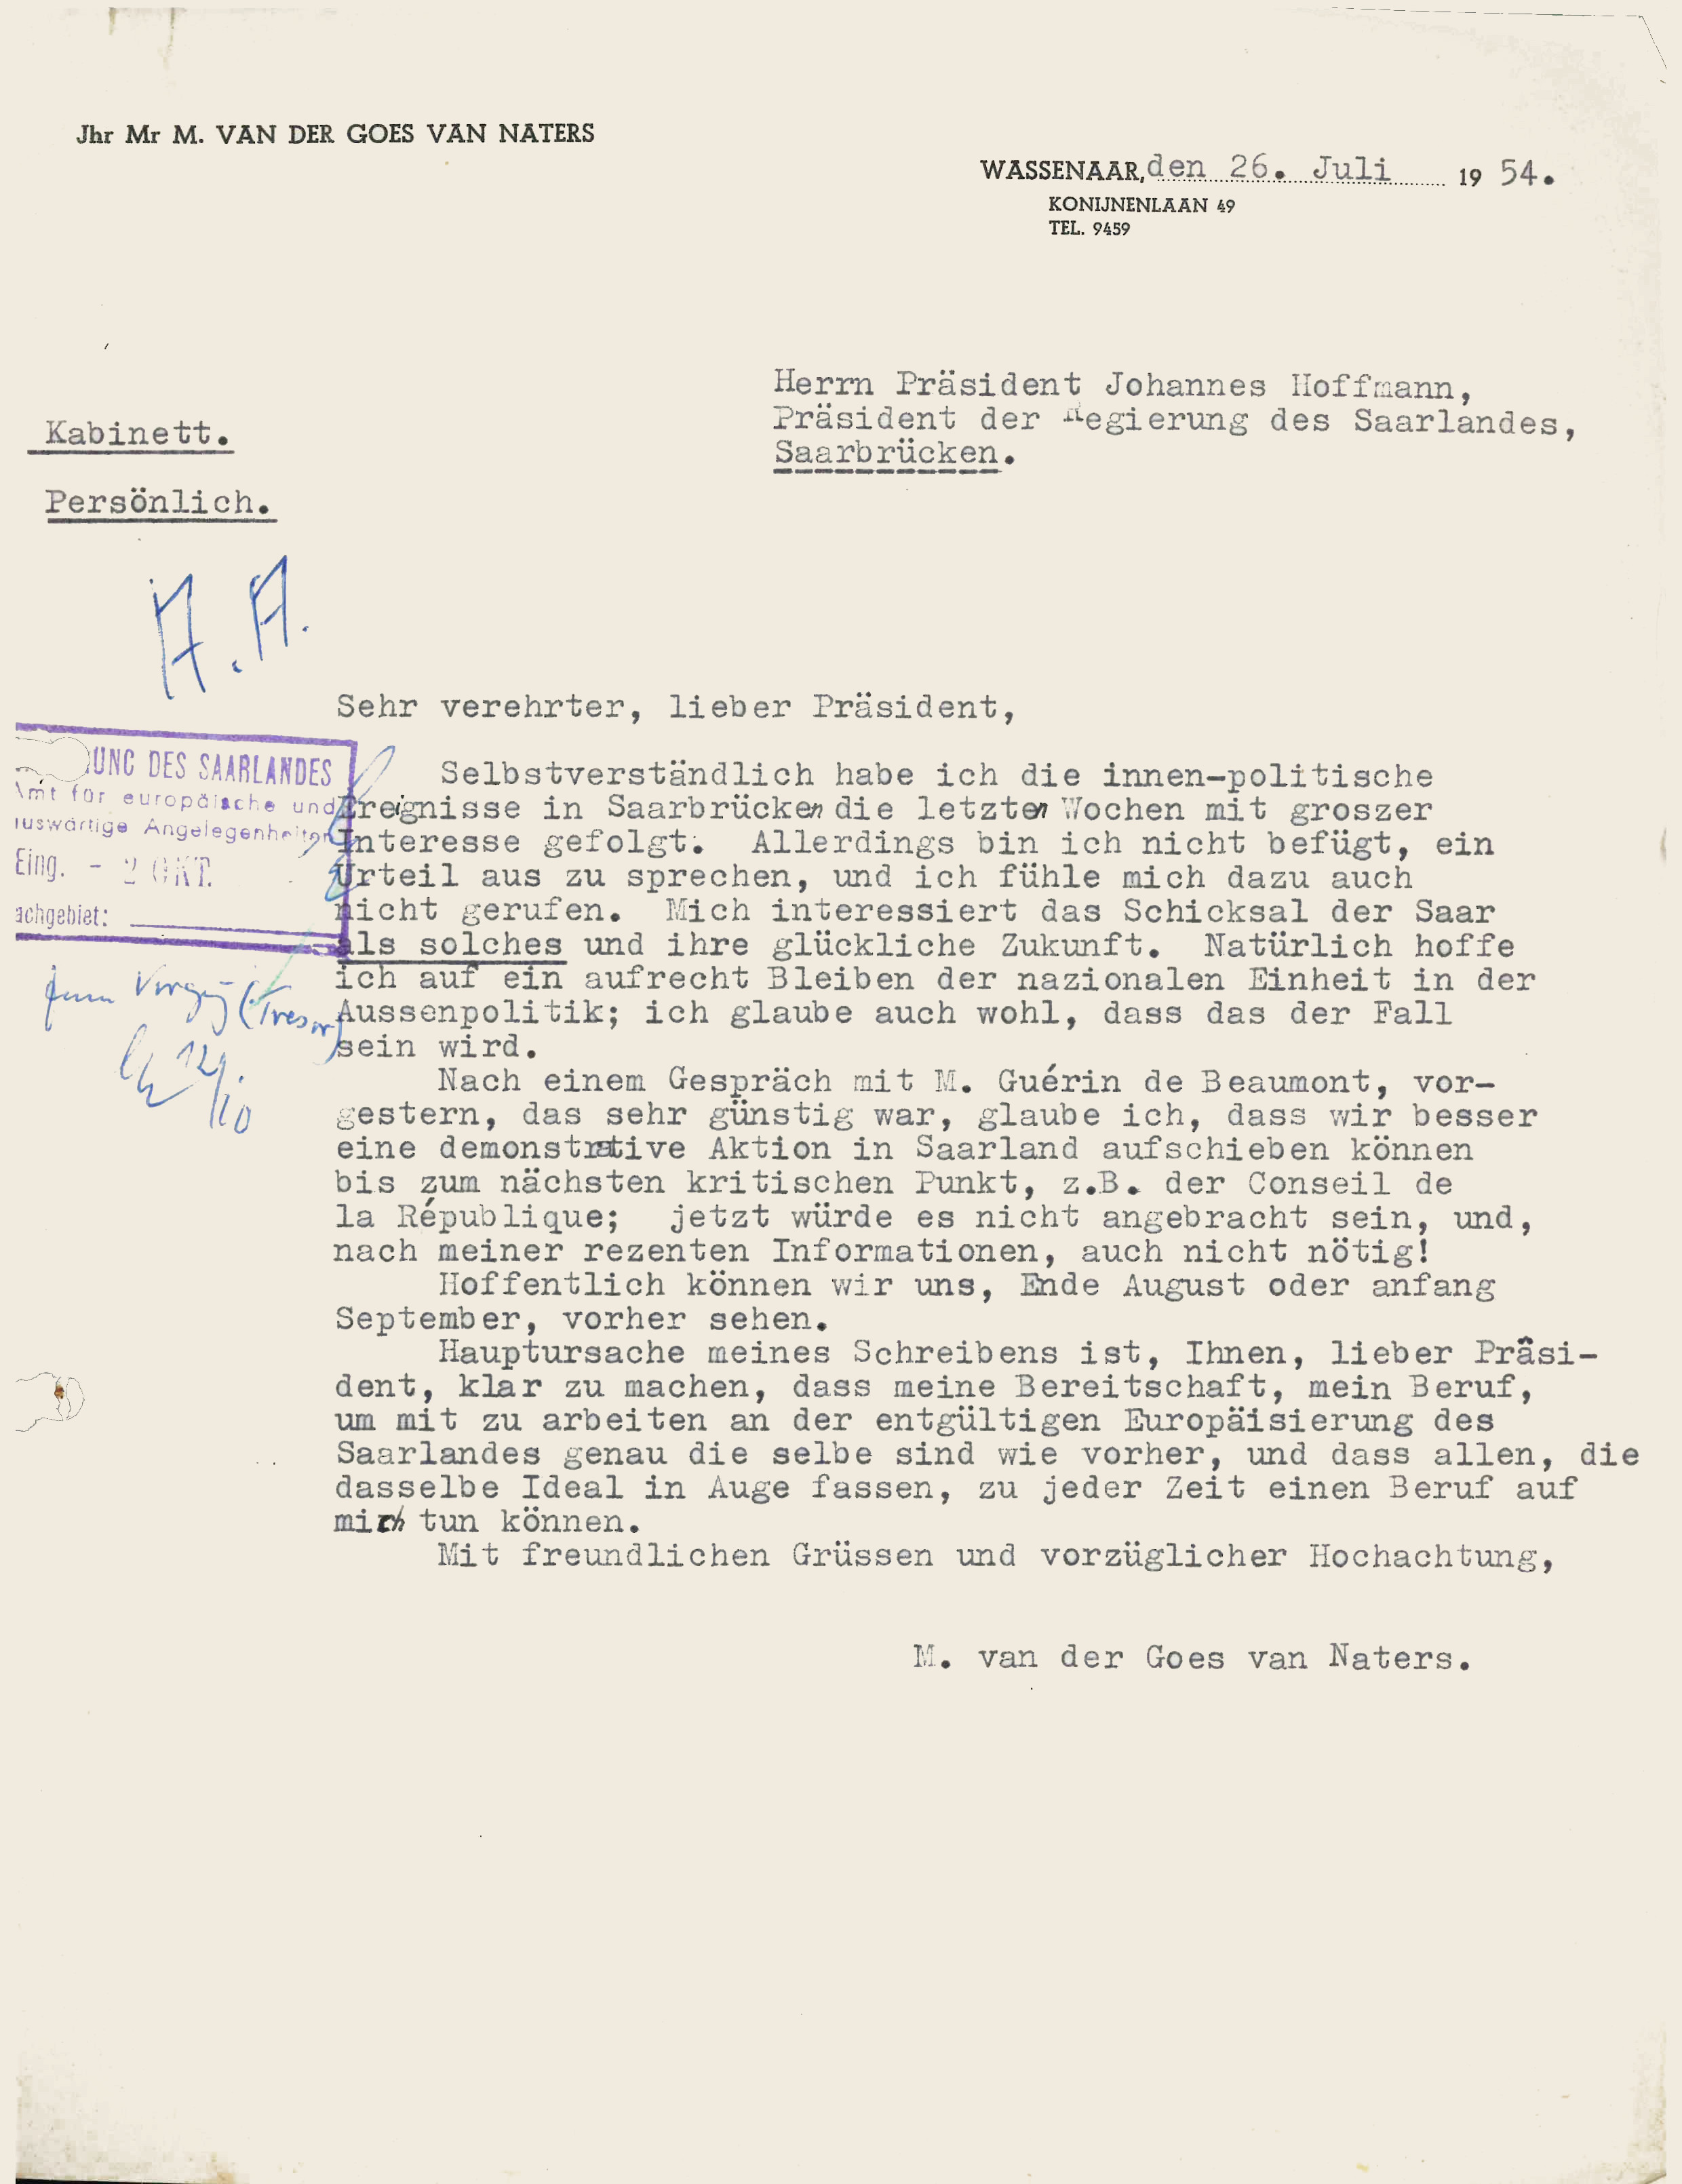 Korrespondenz zwischen Van Naters und dem saarländischen Ministerpräsidenten Johannes Hoffmann vom Sommer 1954